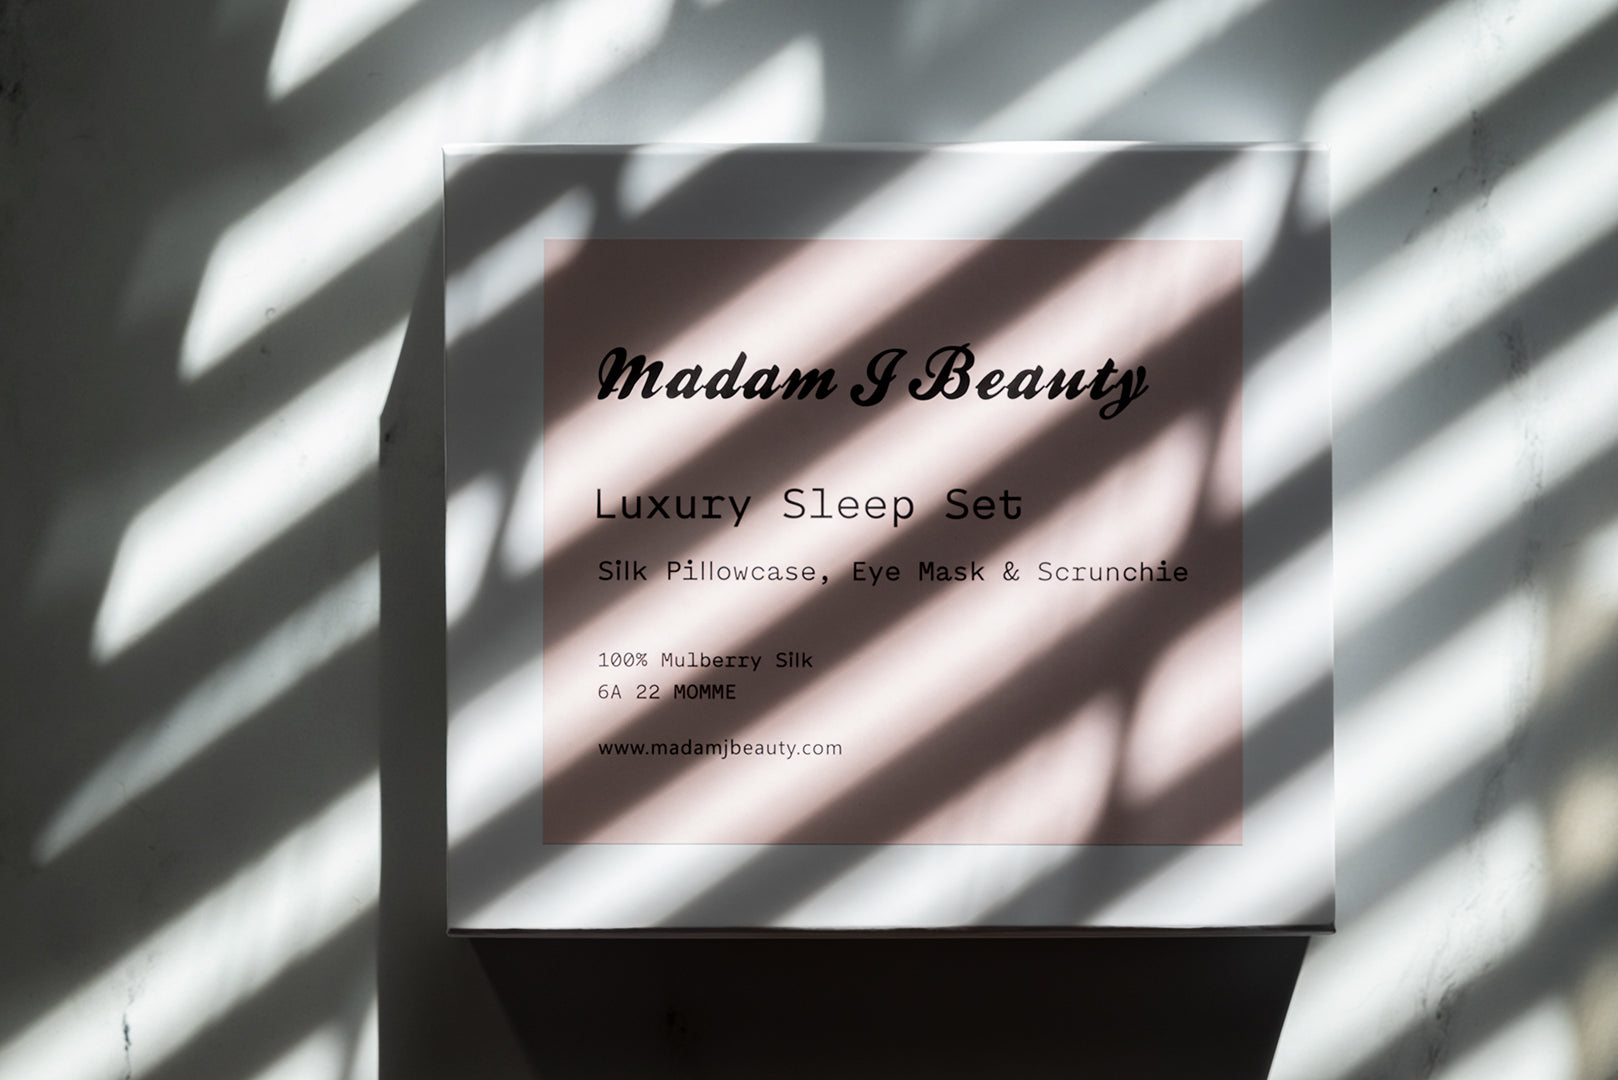 Madam J Beauty Luxury Sleep Set